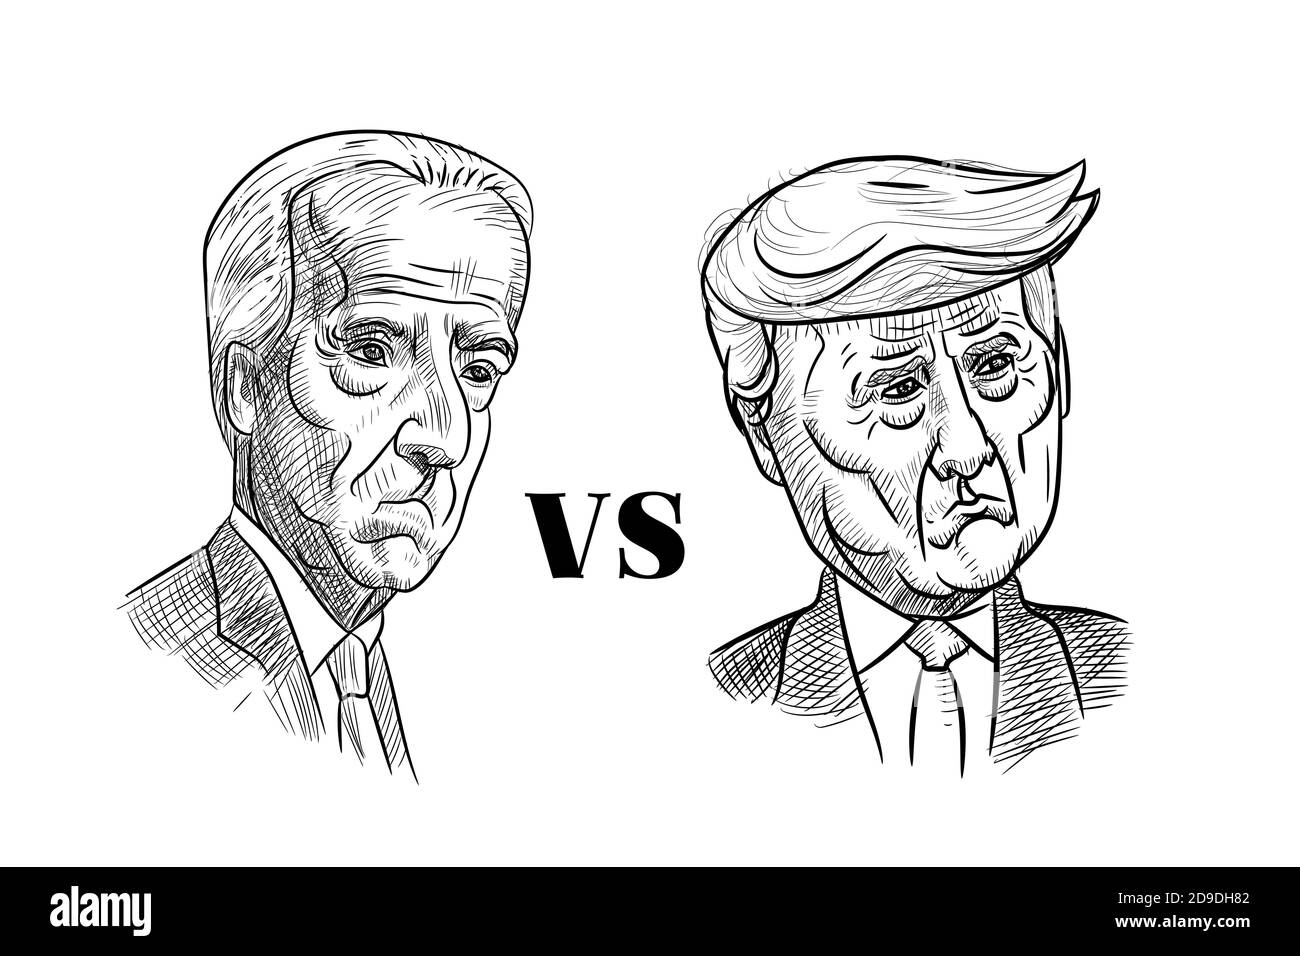 5. Nov 2020, Bangkok, Thailand: Karikaturenzeichnung Porträt des Republikaners Donald Trump gegen den Demokraten Joe Biden, trauriges Gesicht, für den amerikanischen Präsidenten Electio Stock Vektor